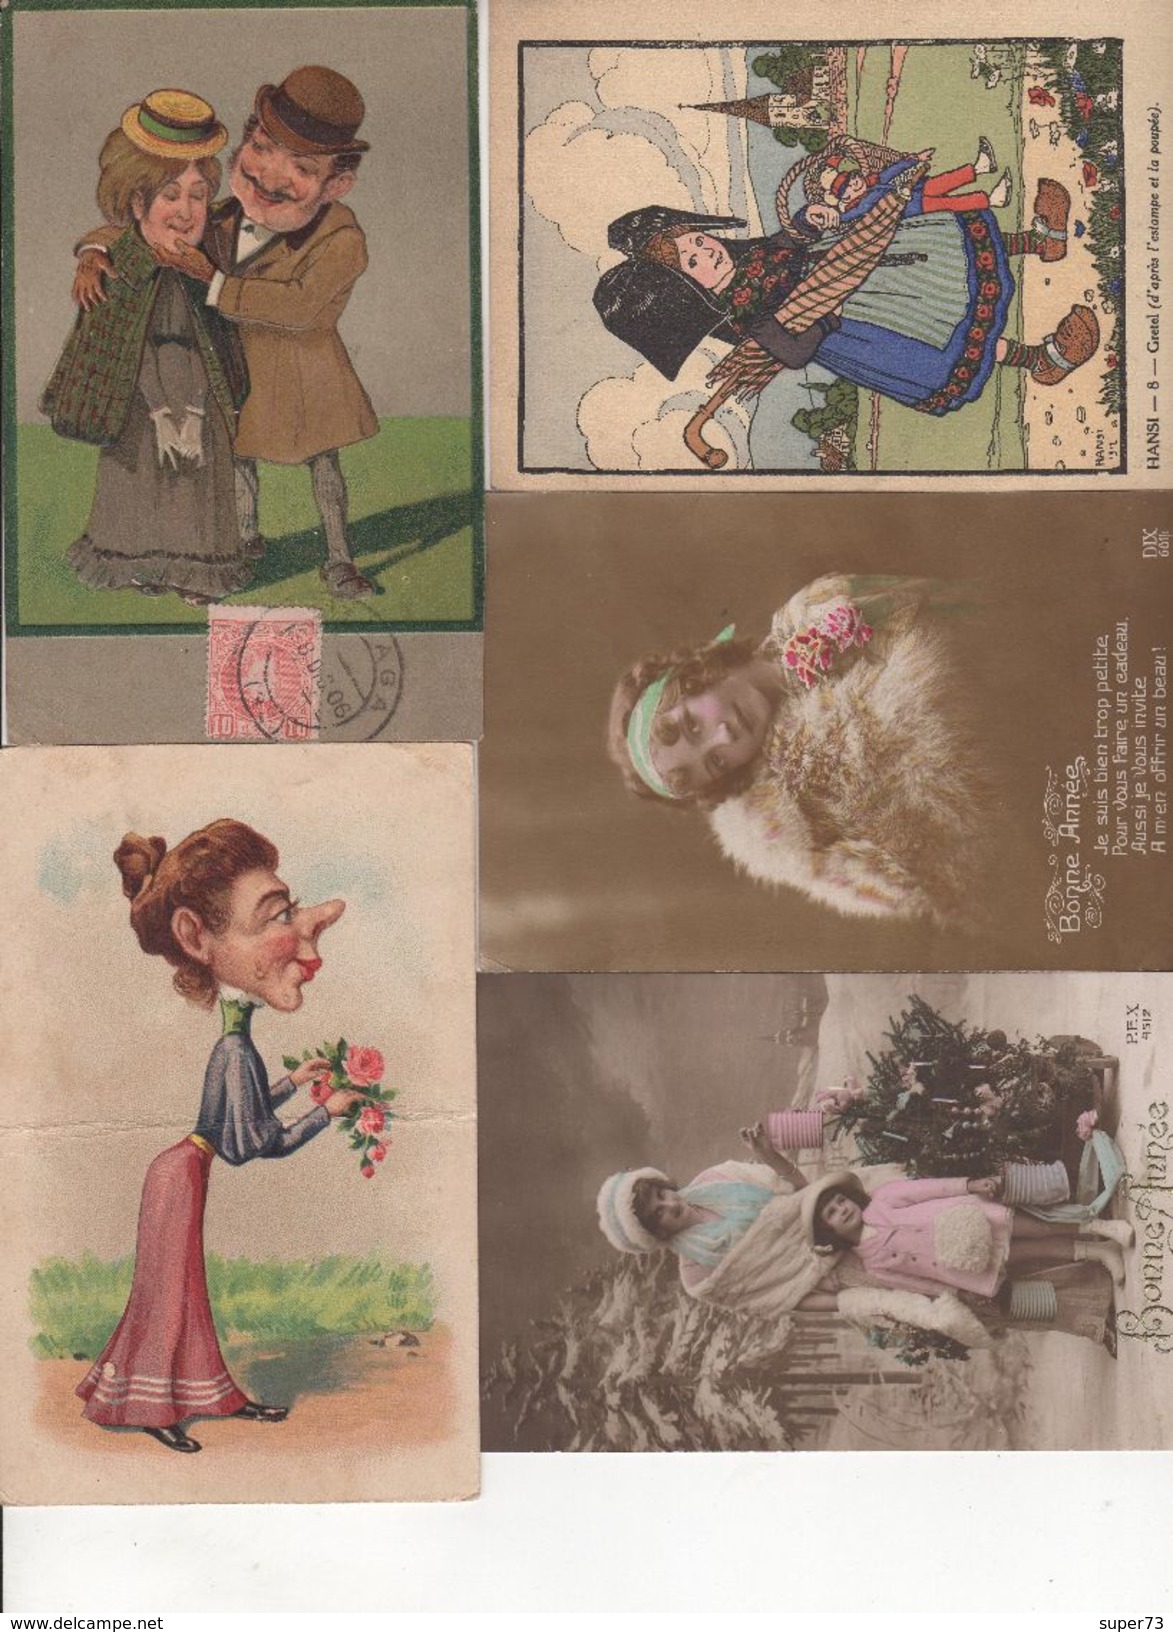 Lot divers de 95 cartes postales anciennes : fantaisie , folklore , humour , caricature ... A voir